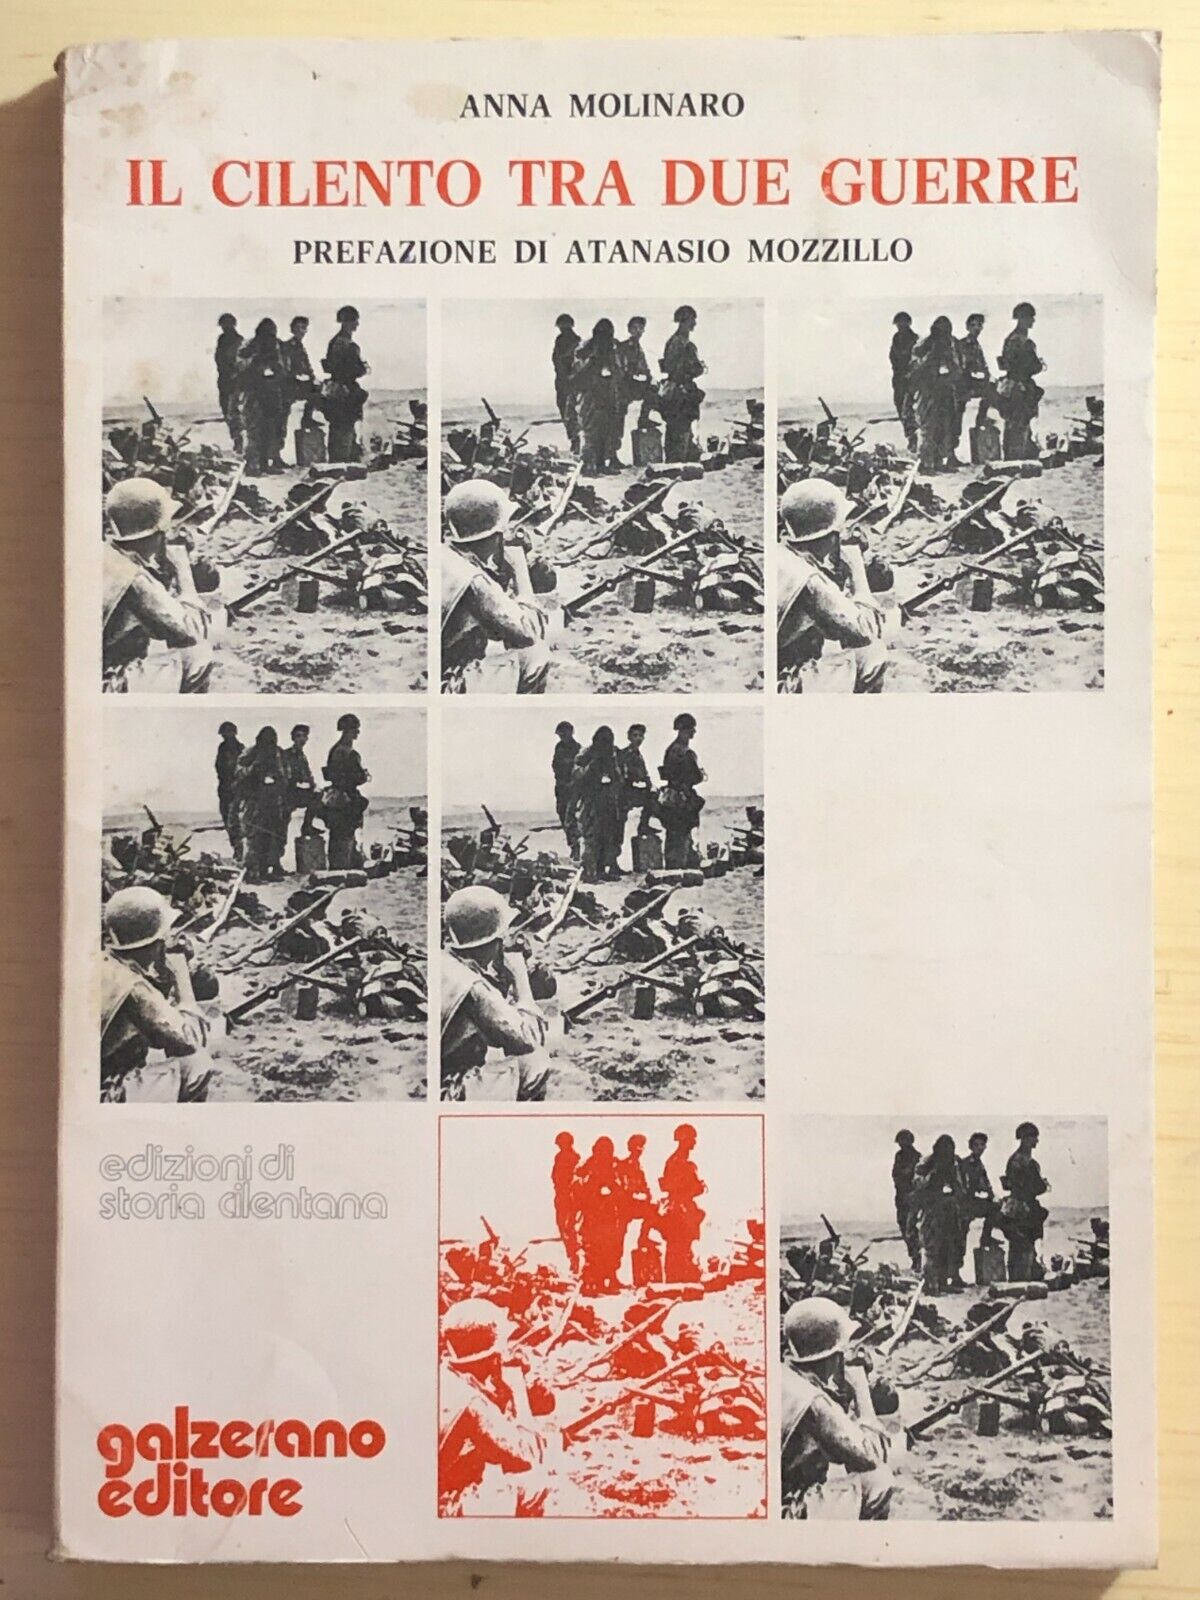 Il Cilento tra due guerre di Anna Molinaro, 1976, Galzerano editore